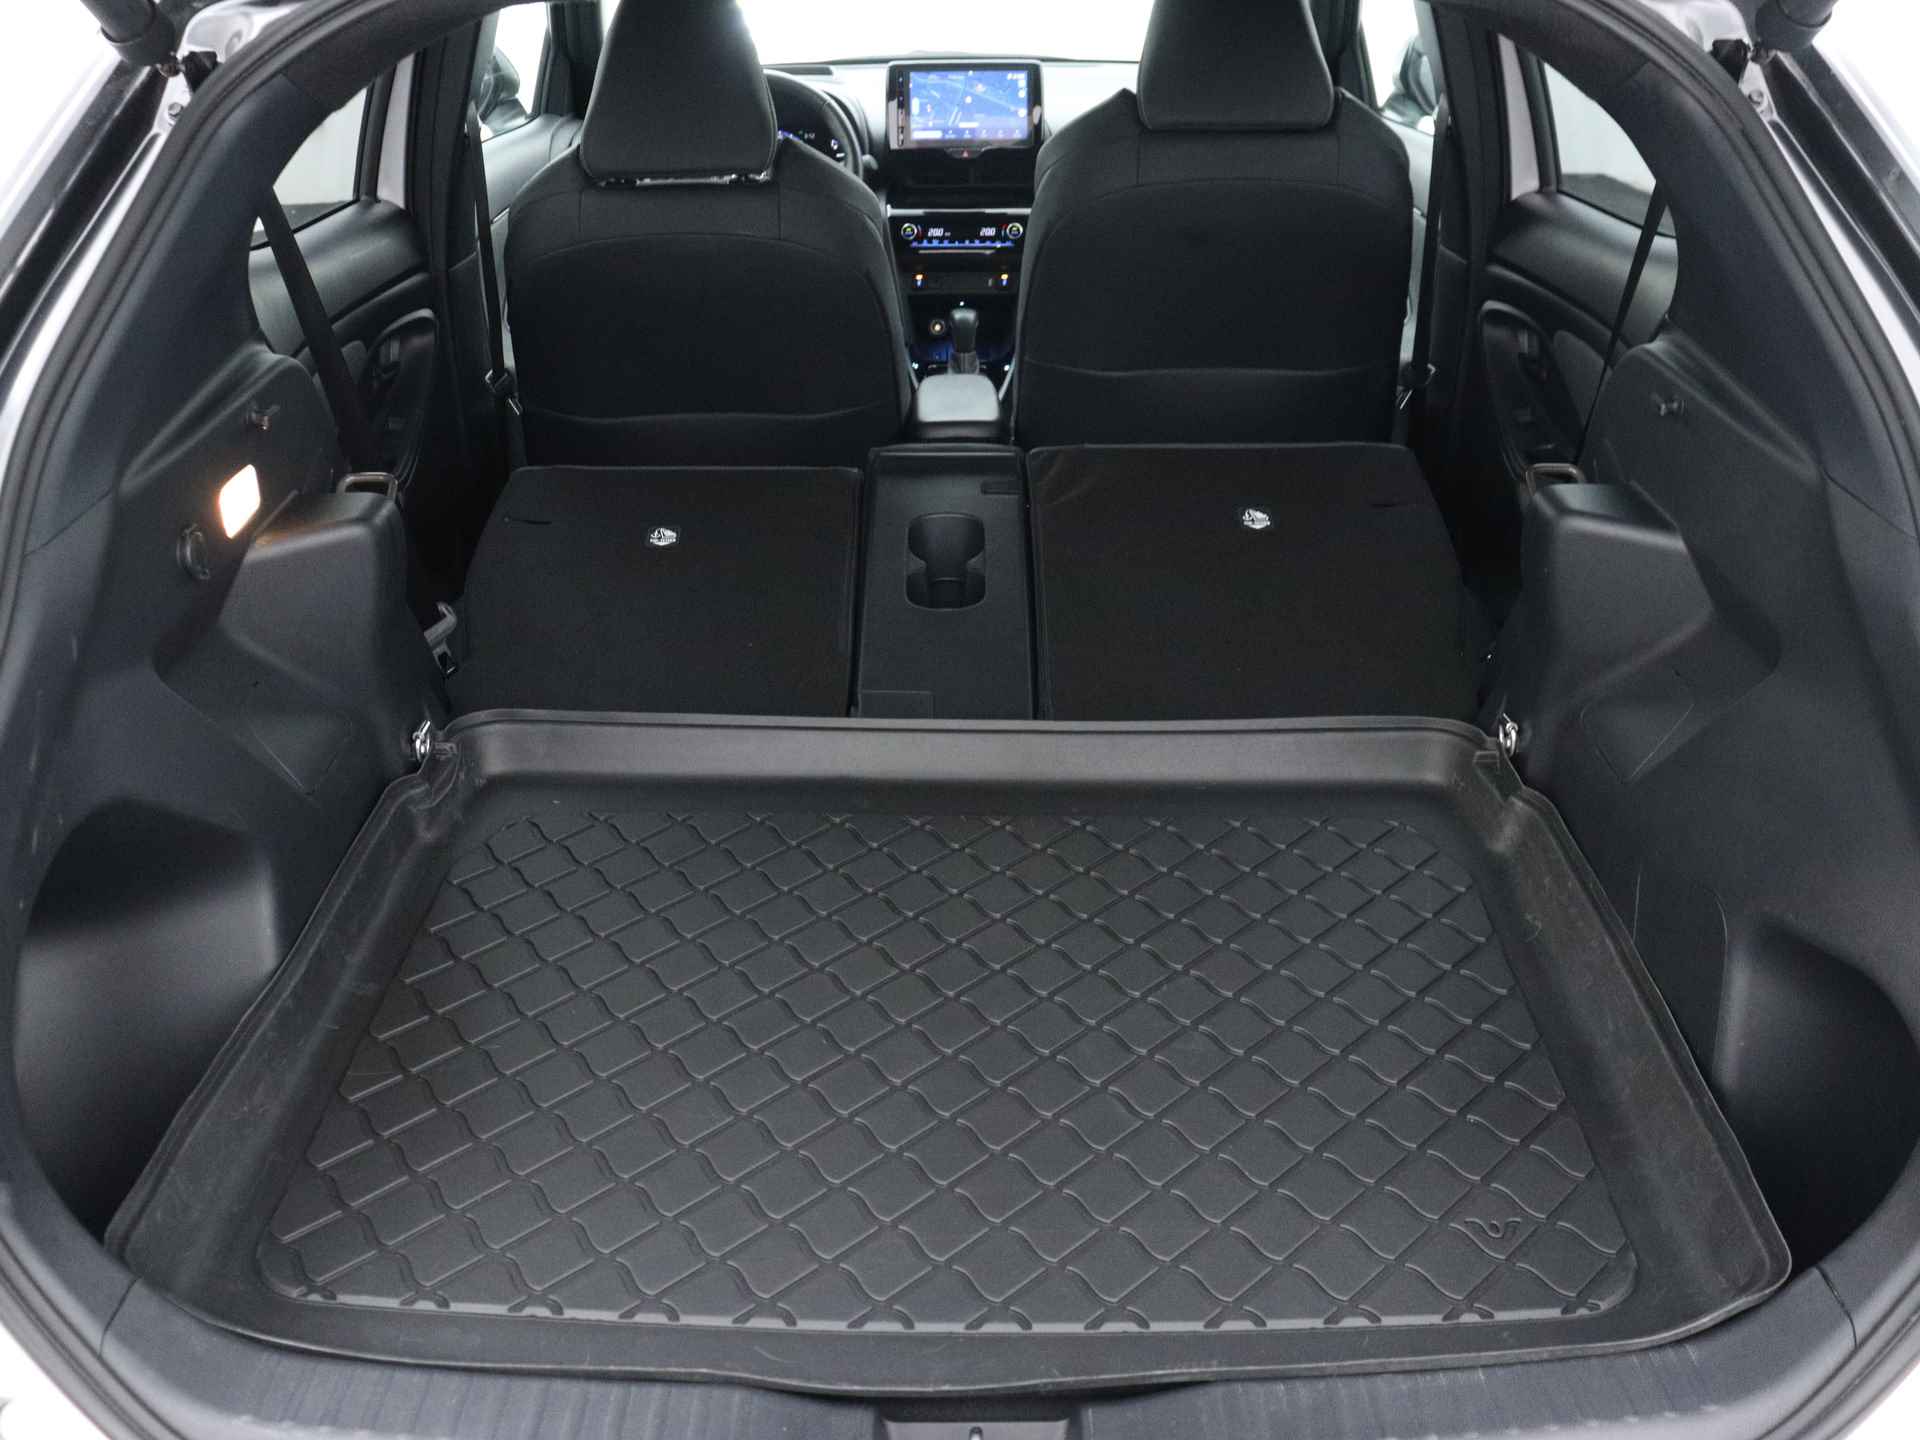 Toyota Yaris Cross 1.5 Hybrid Adventure Limited | Stoel & stuurverwarming  | Elektrische achterklep | Parkeersensoren voor & achter | - 39/47